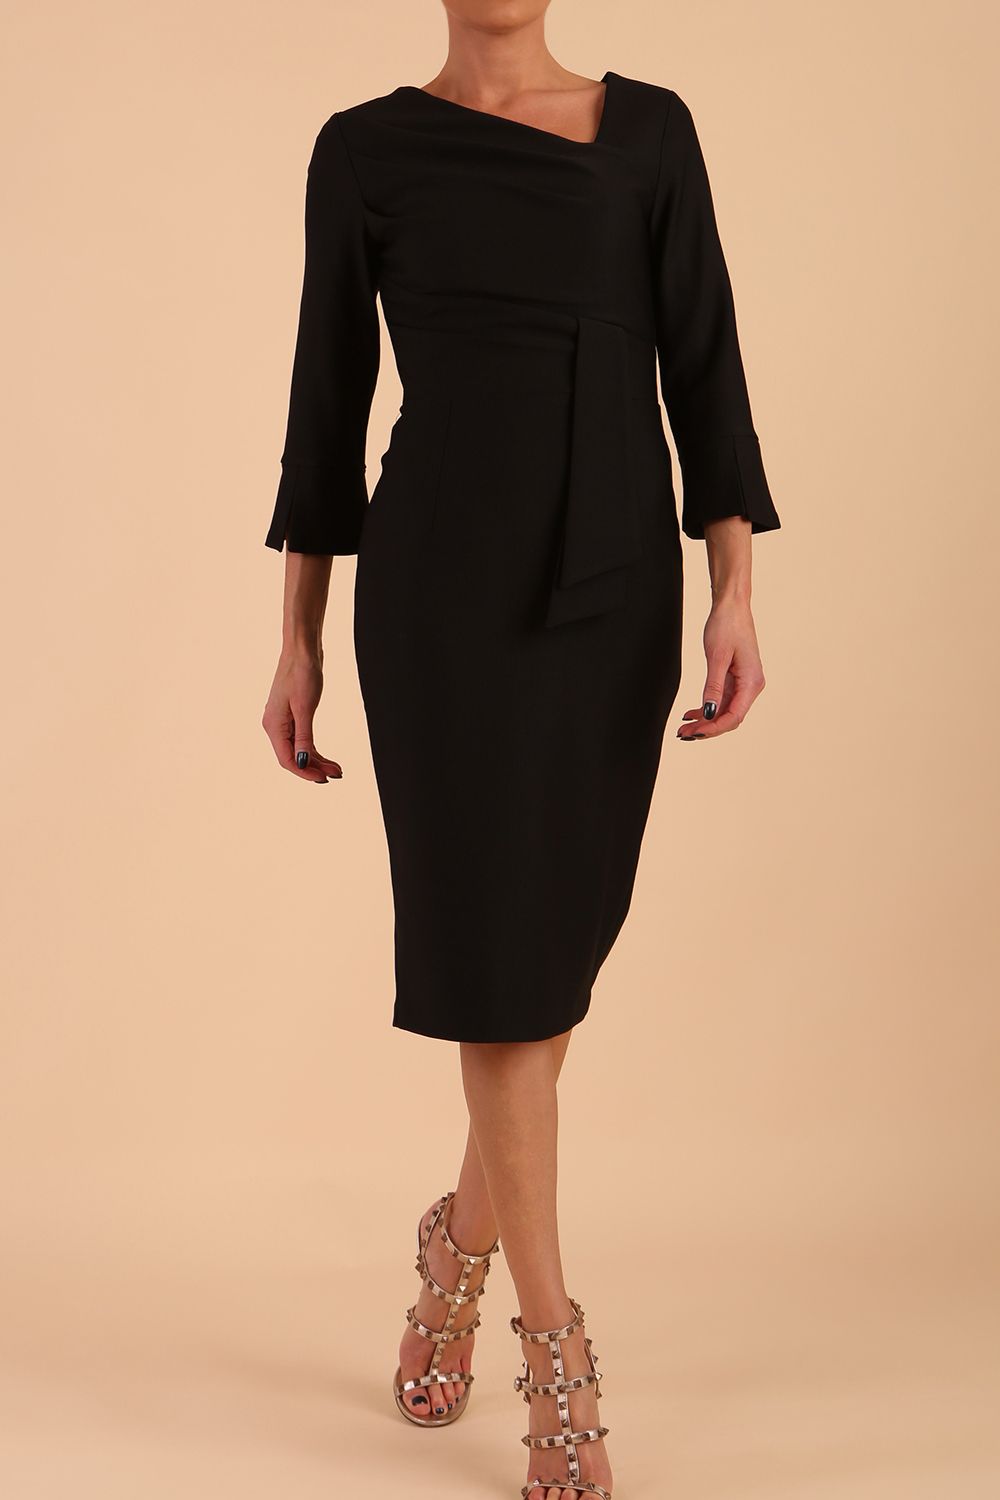 Model wearing diva catwalk Seed Orla Asymmetric Pencil Dress in Black front